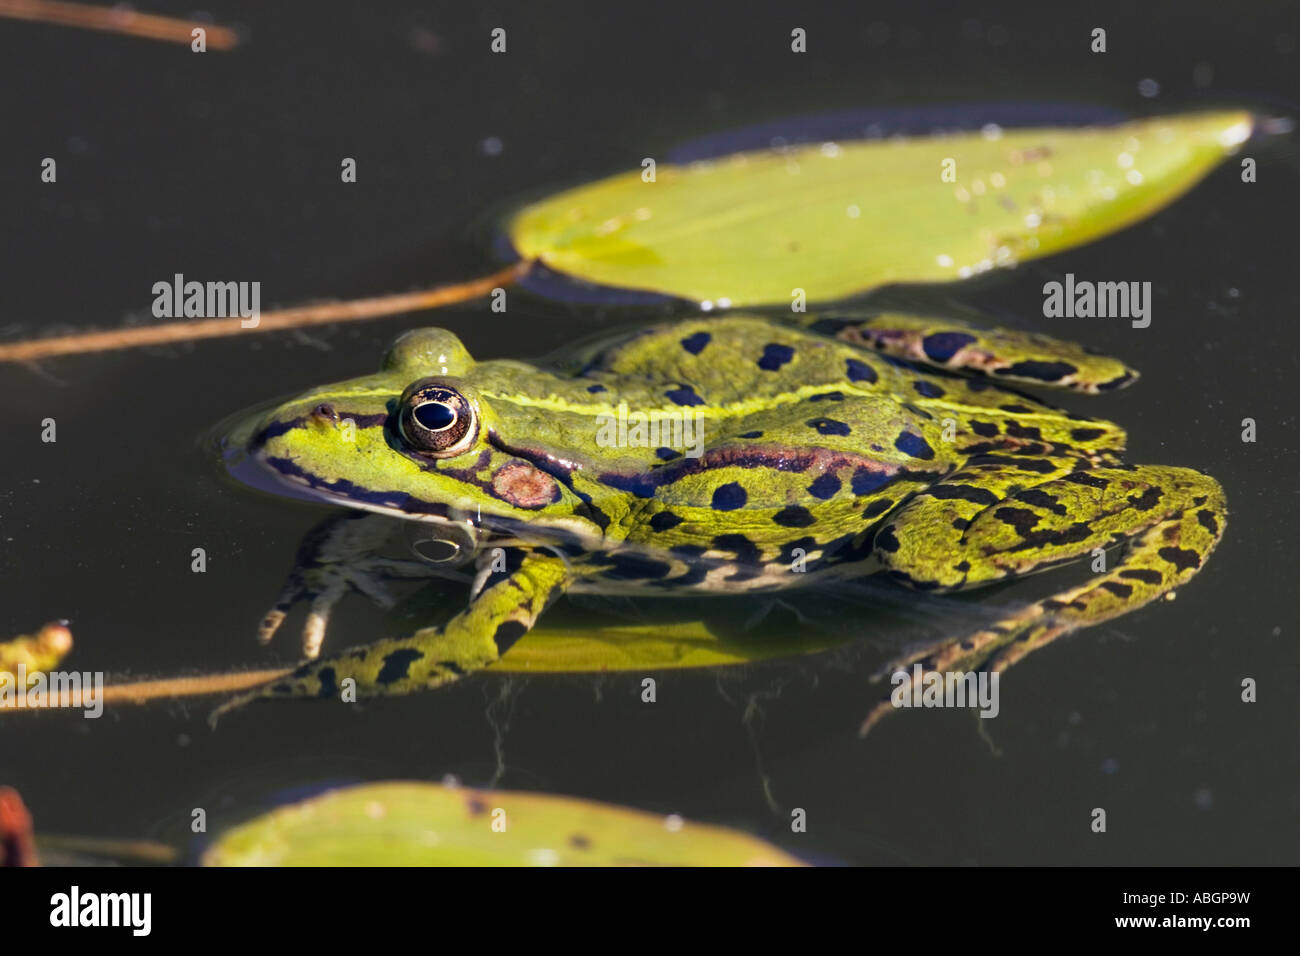 Aquatic Frog in pond, Rana esculenta, Bavaria, Germany Stock Photo